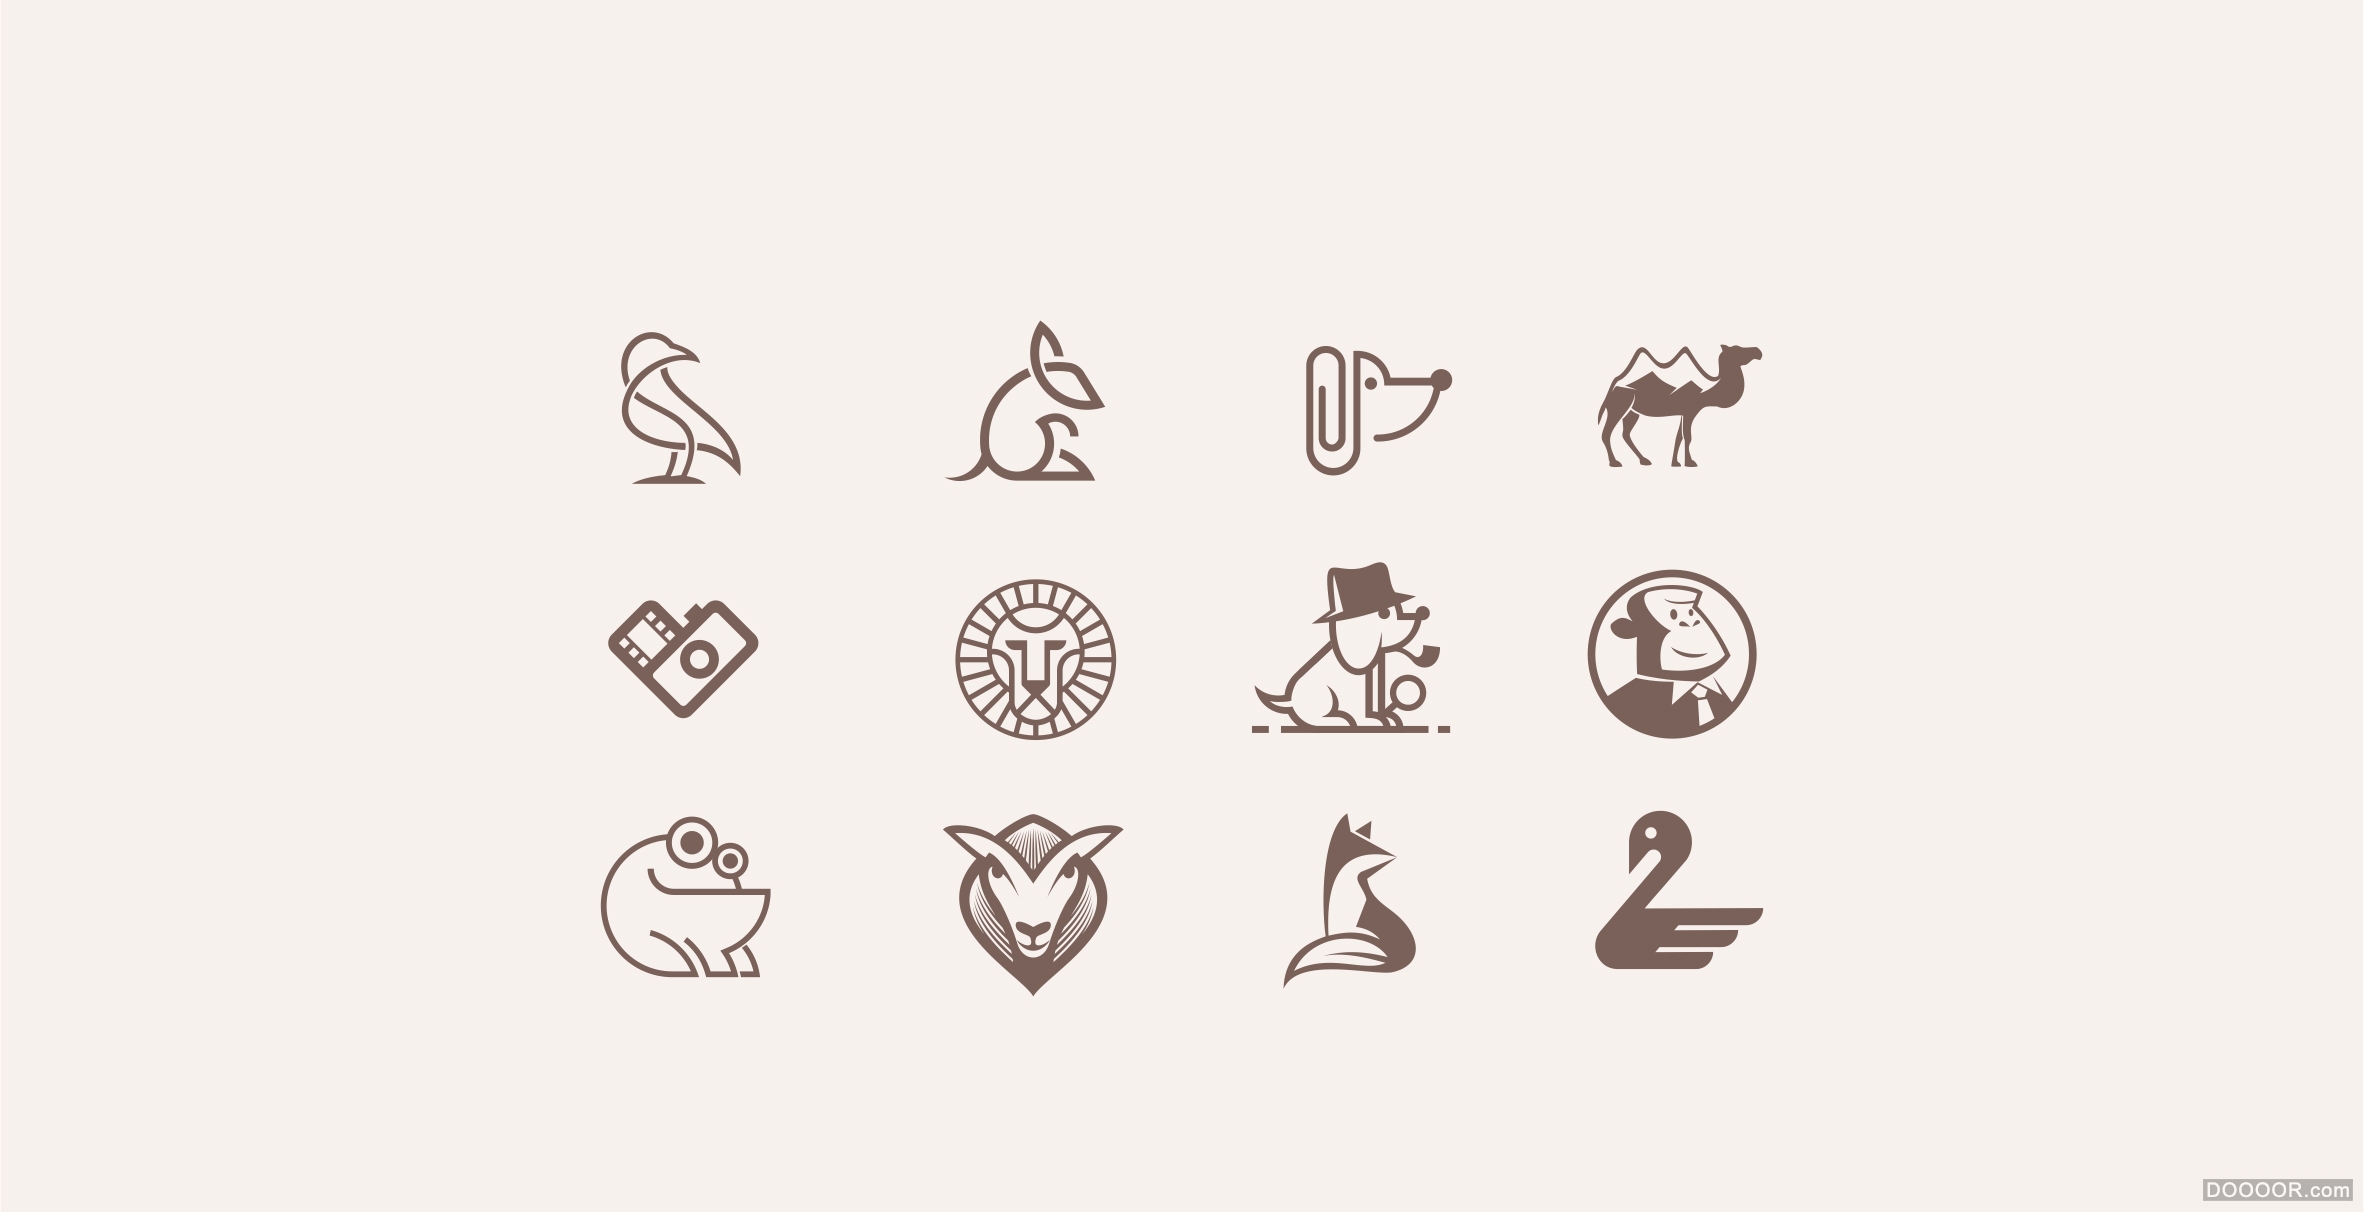 霸气动物logo设计图片